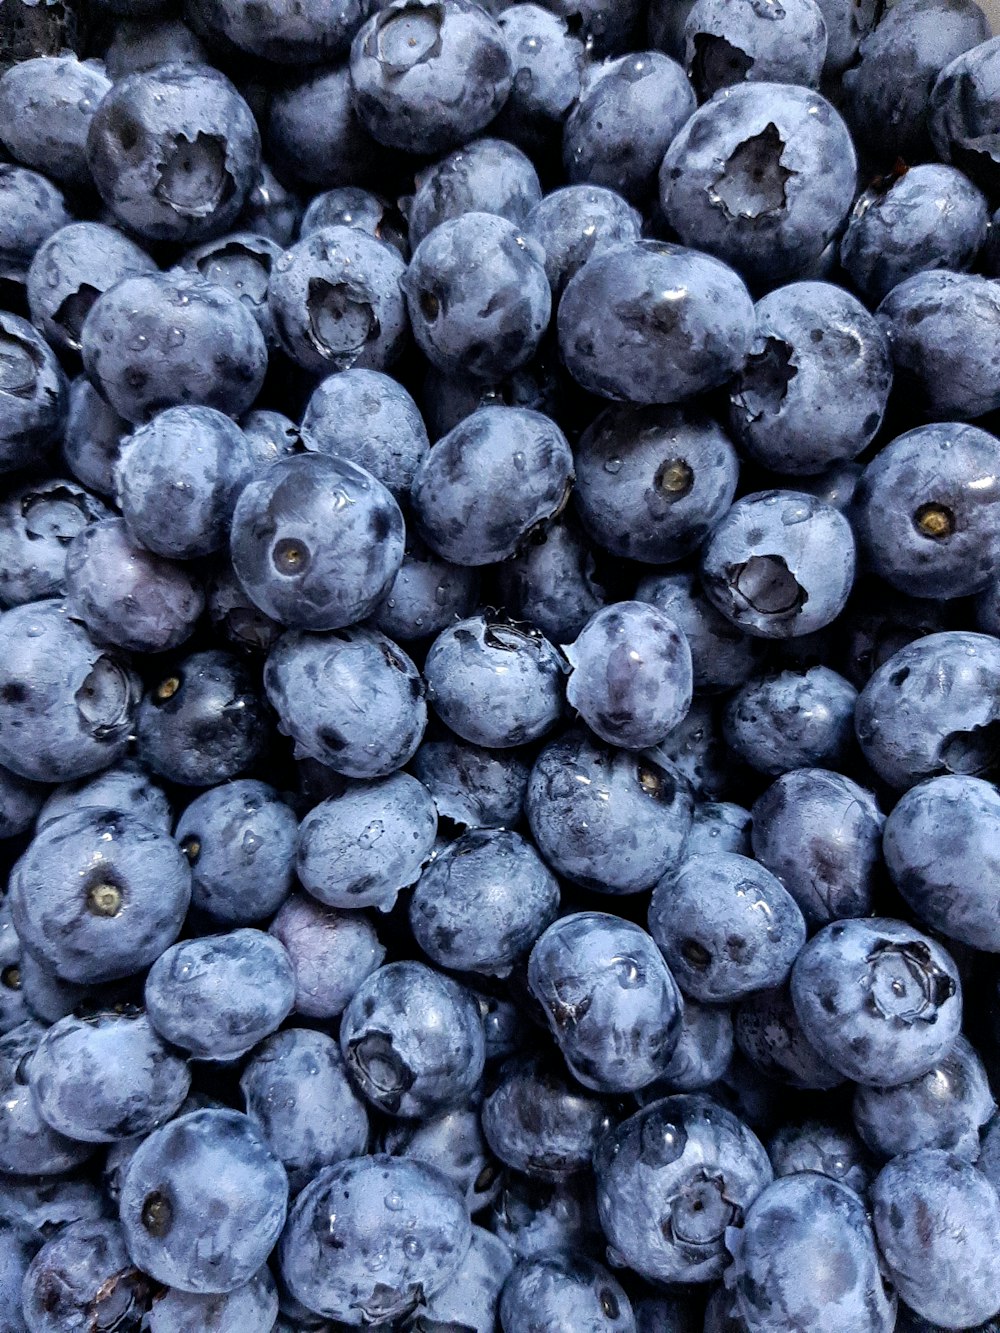 Trái blueberries trên nền trắng là bức ảnh độc đáo và nghệ thuật - khiến bất kỳ ai nhìn vào đều có cảm giác yên bình và thư thái. Hãy cùng chiêm ngưỡng bức ảnh tuyệt đẹp này.